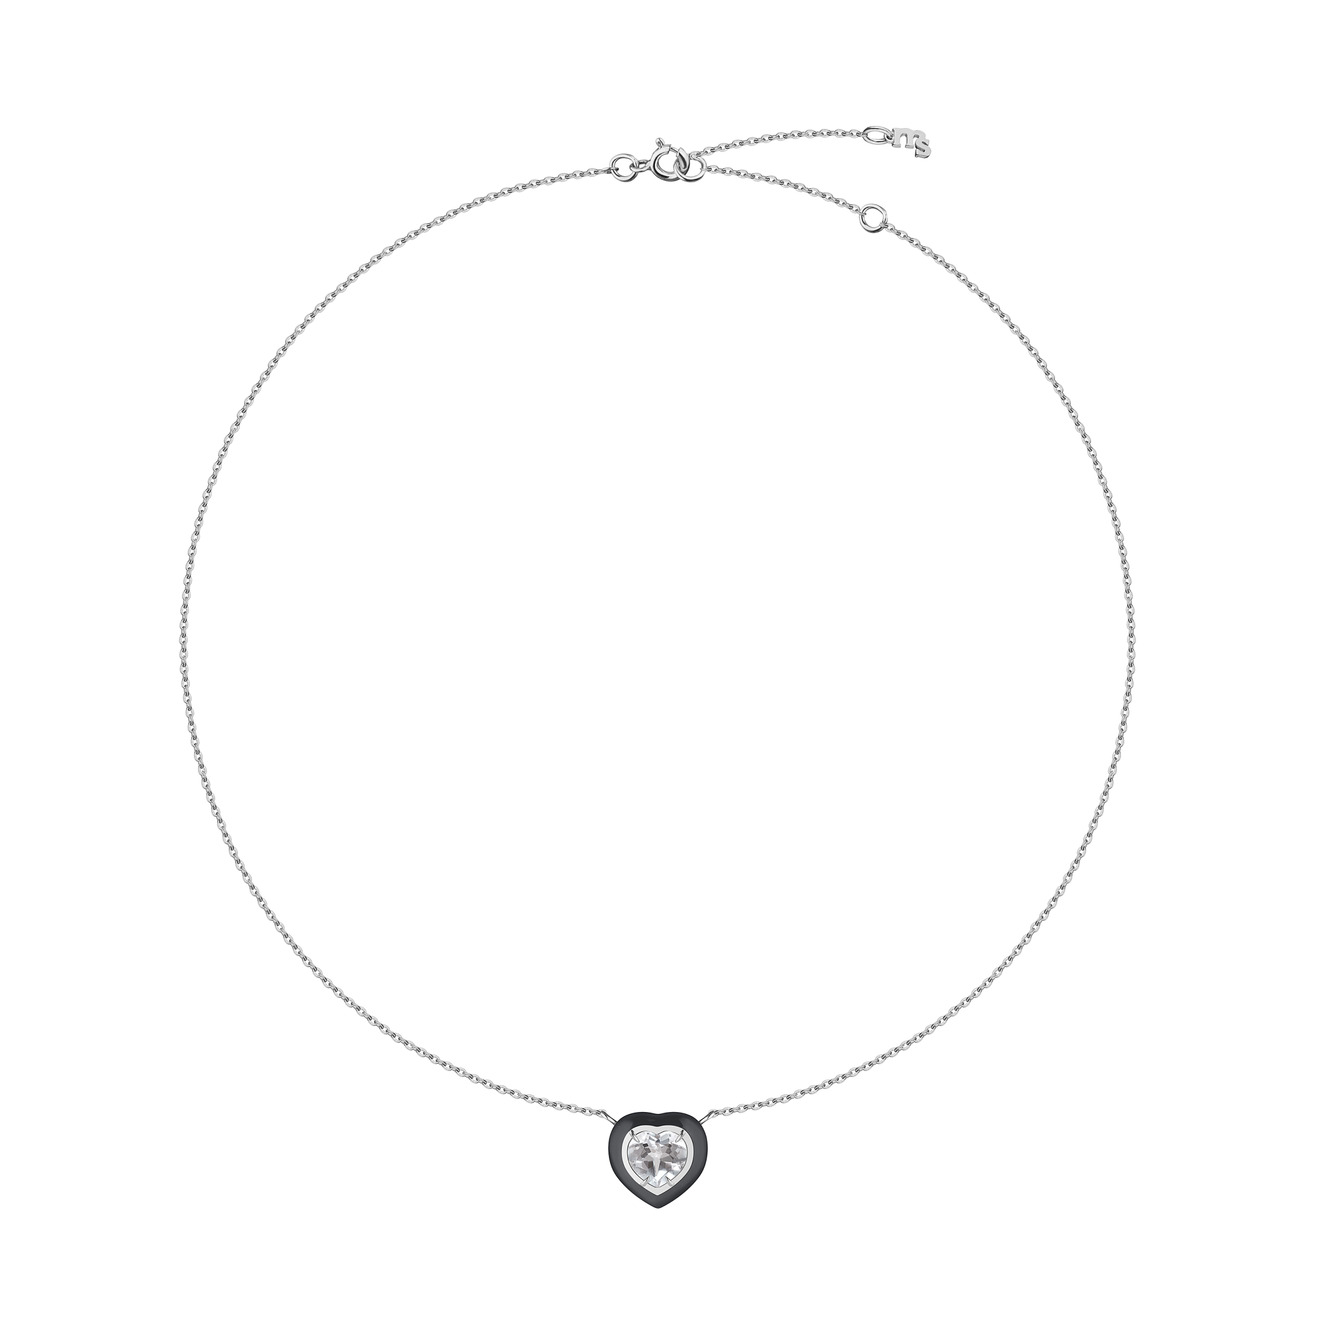 Moonka Ожерелье из серебра с горным хрусталем и черной эмалью серьги серебряные moonka малые с горным хрусталем 2 шт